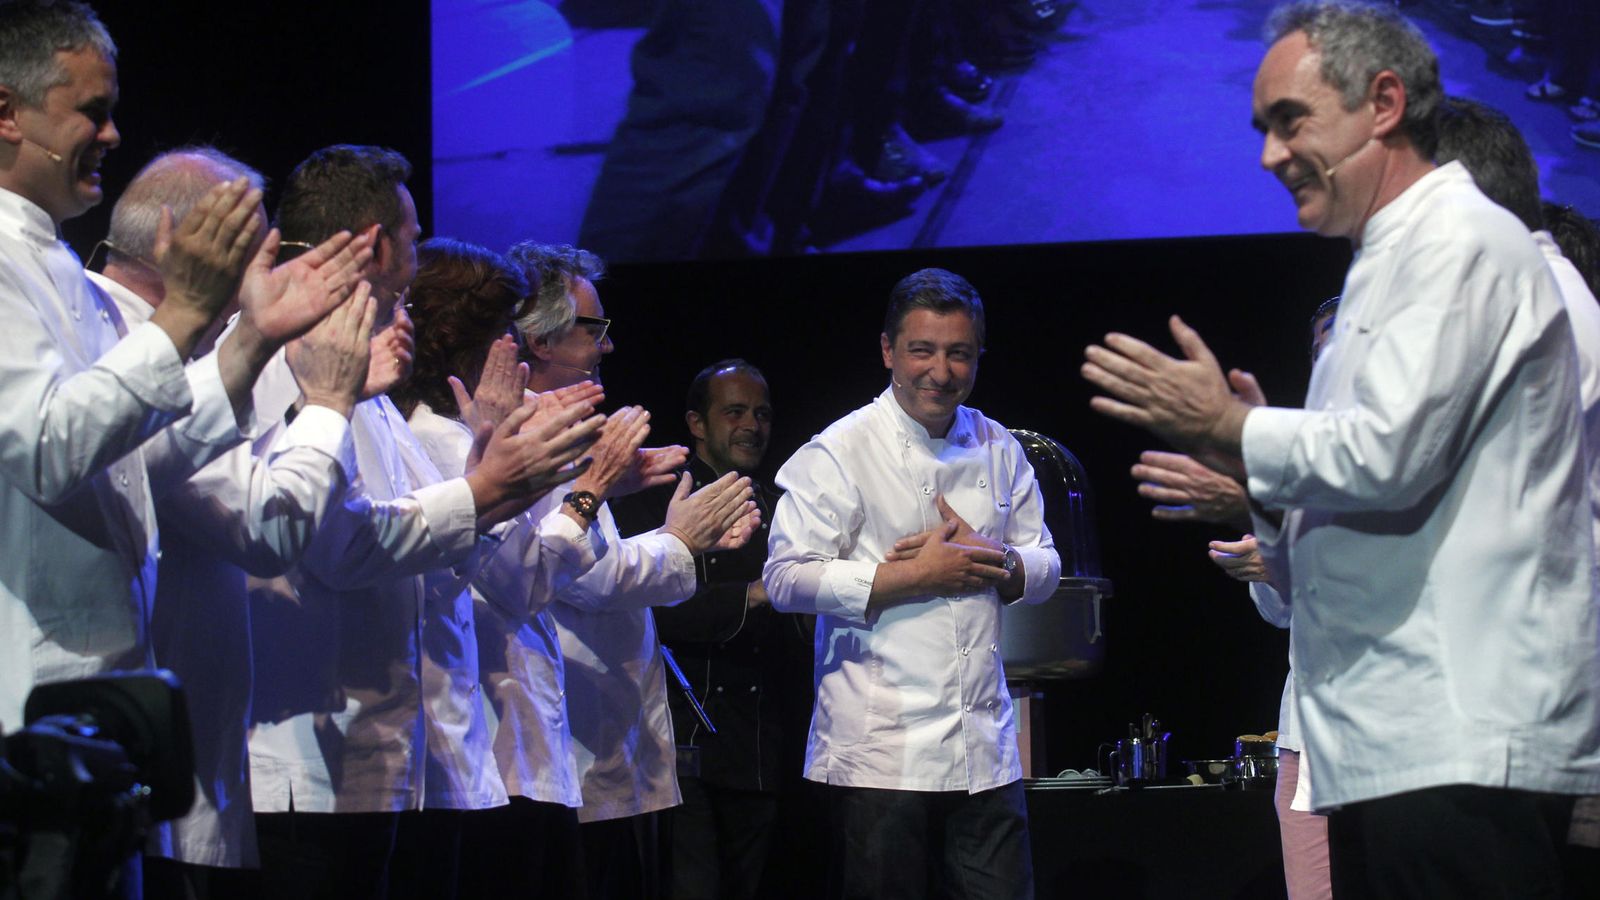 Foto: Ferran Adrià y otros chefs aplauden a Joan Roca, cocinero jefe del mejor restaurante del mundo. (iStock)